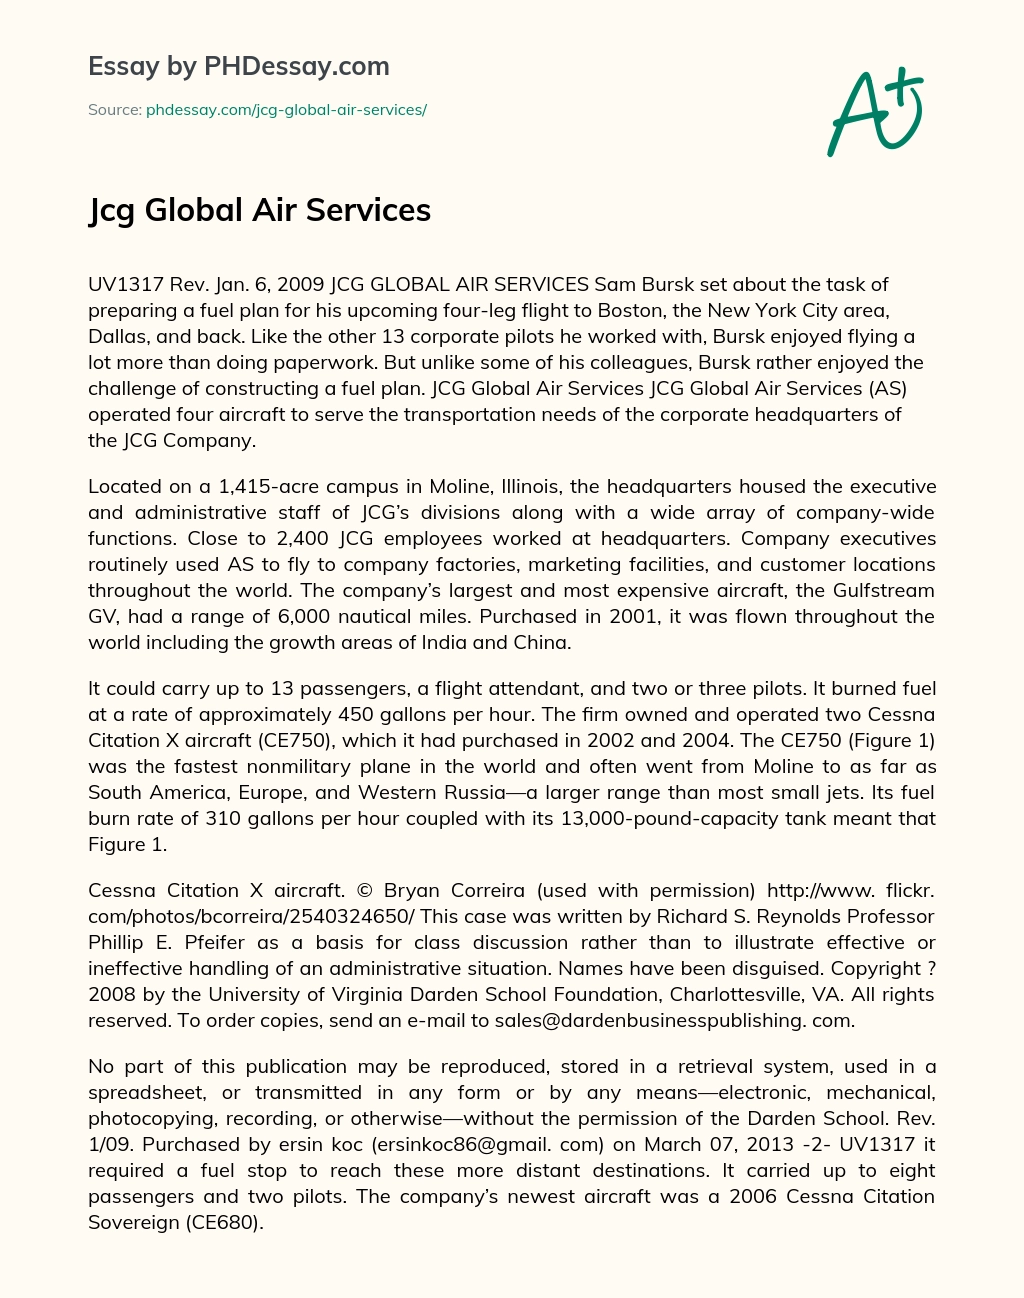 Jcg Global Air Services essay